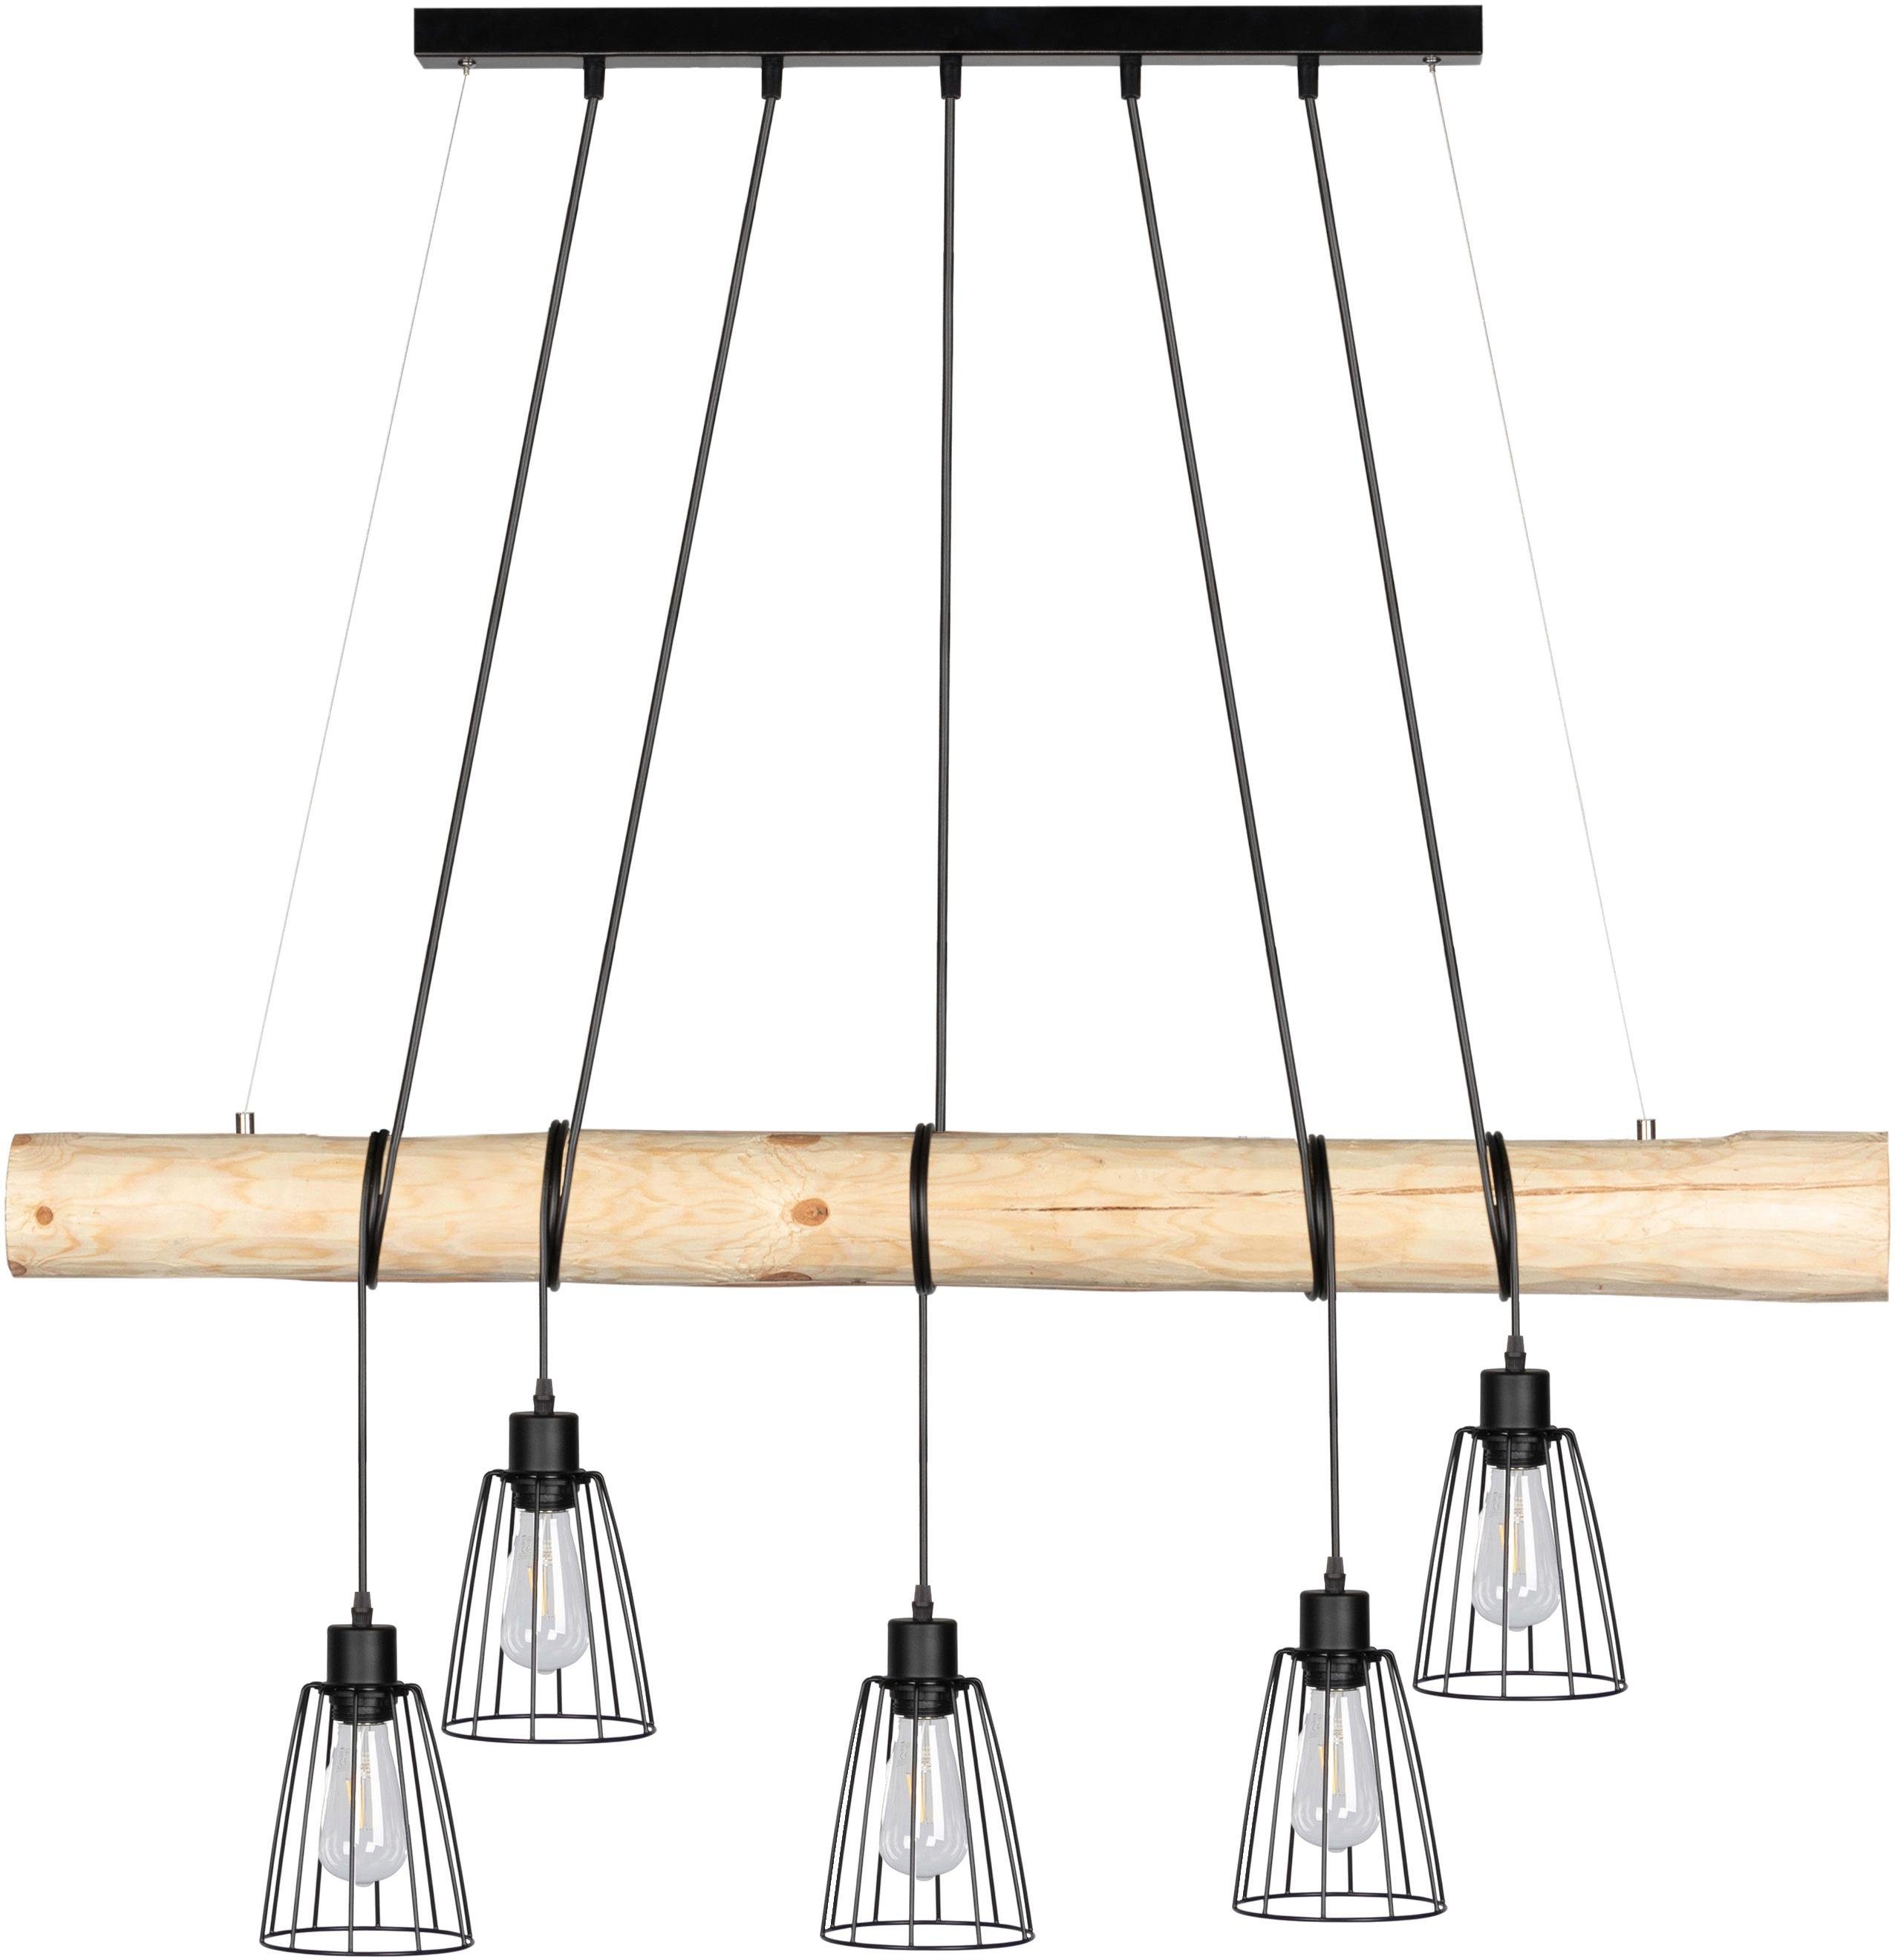 SPOT Light Hanglamp TRABO LONG Hanglamp, met massief houten balken ø 8-12 cm, natuurproduct met FSC®-certificaat, in te korten, bijpassende LM E27, Made in Europe